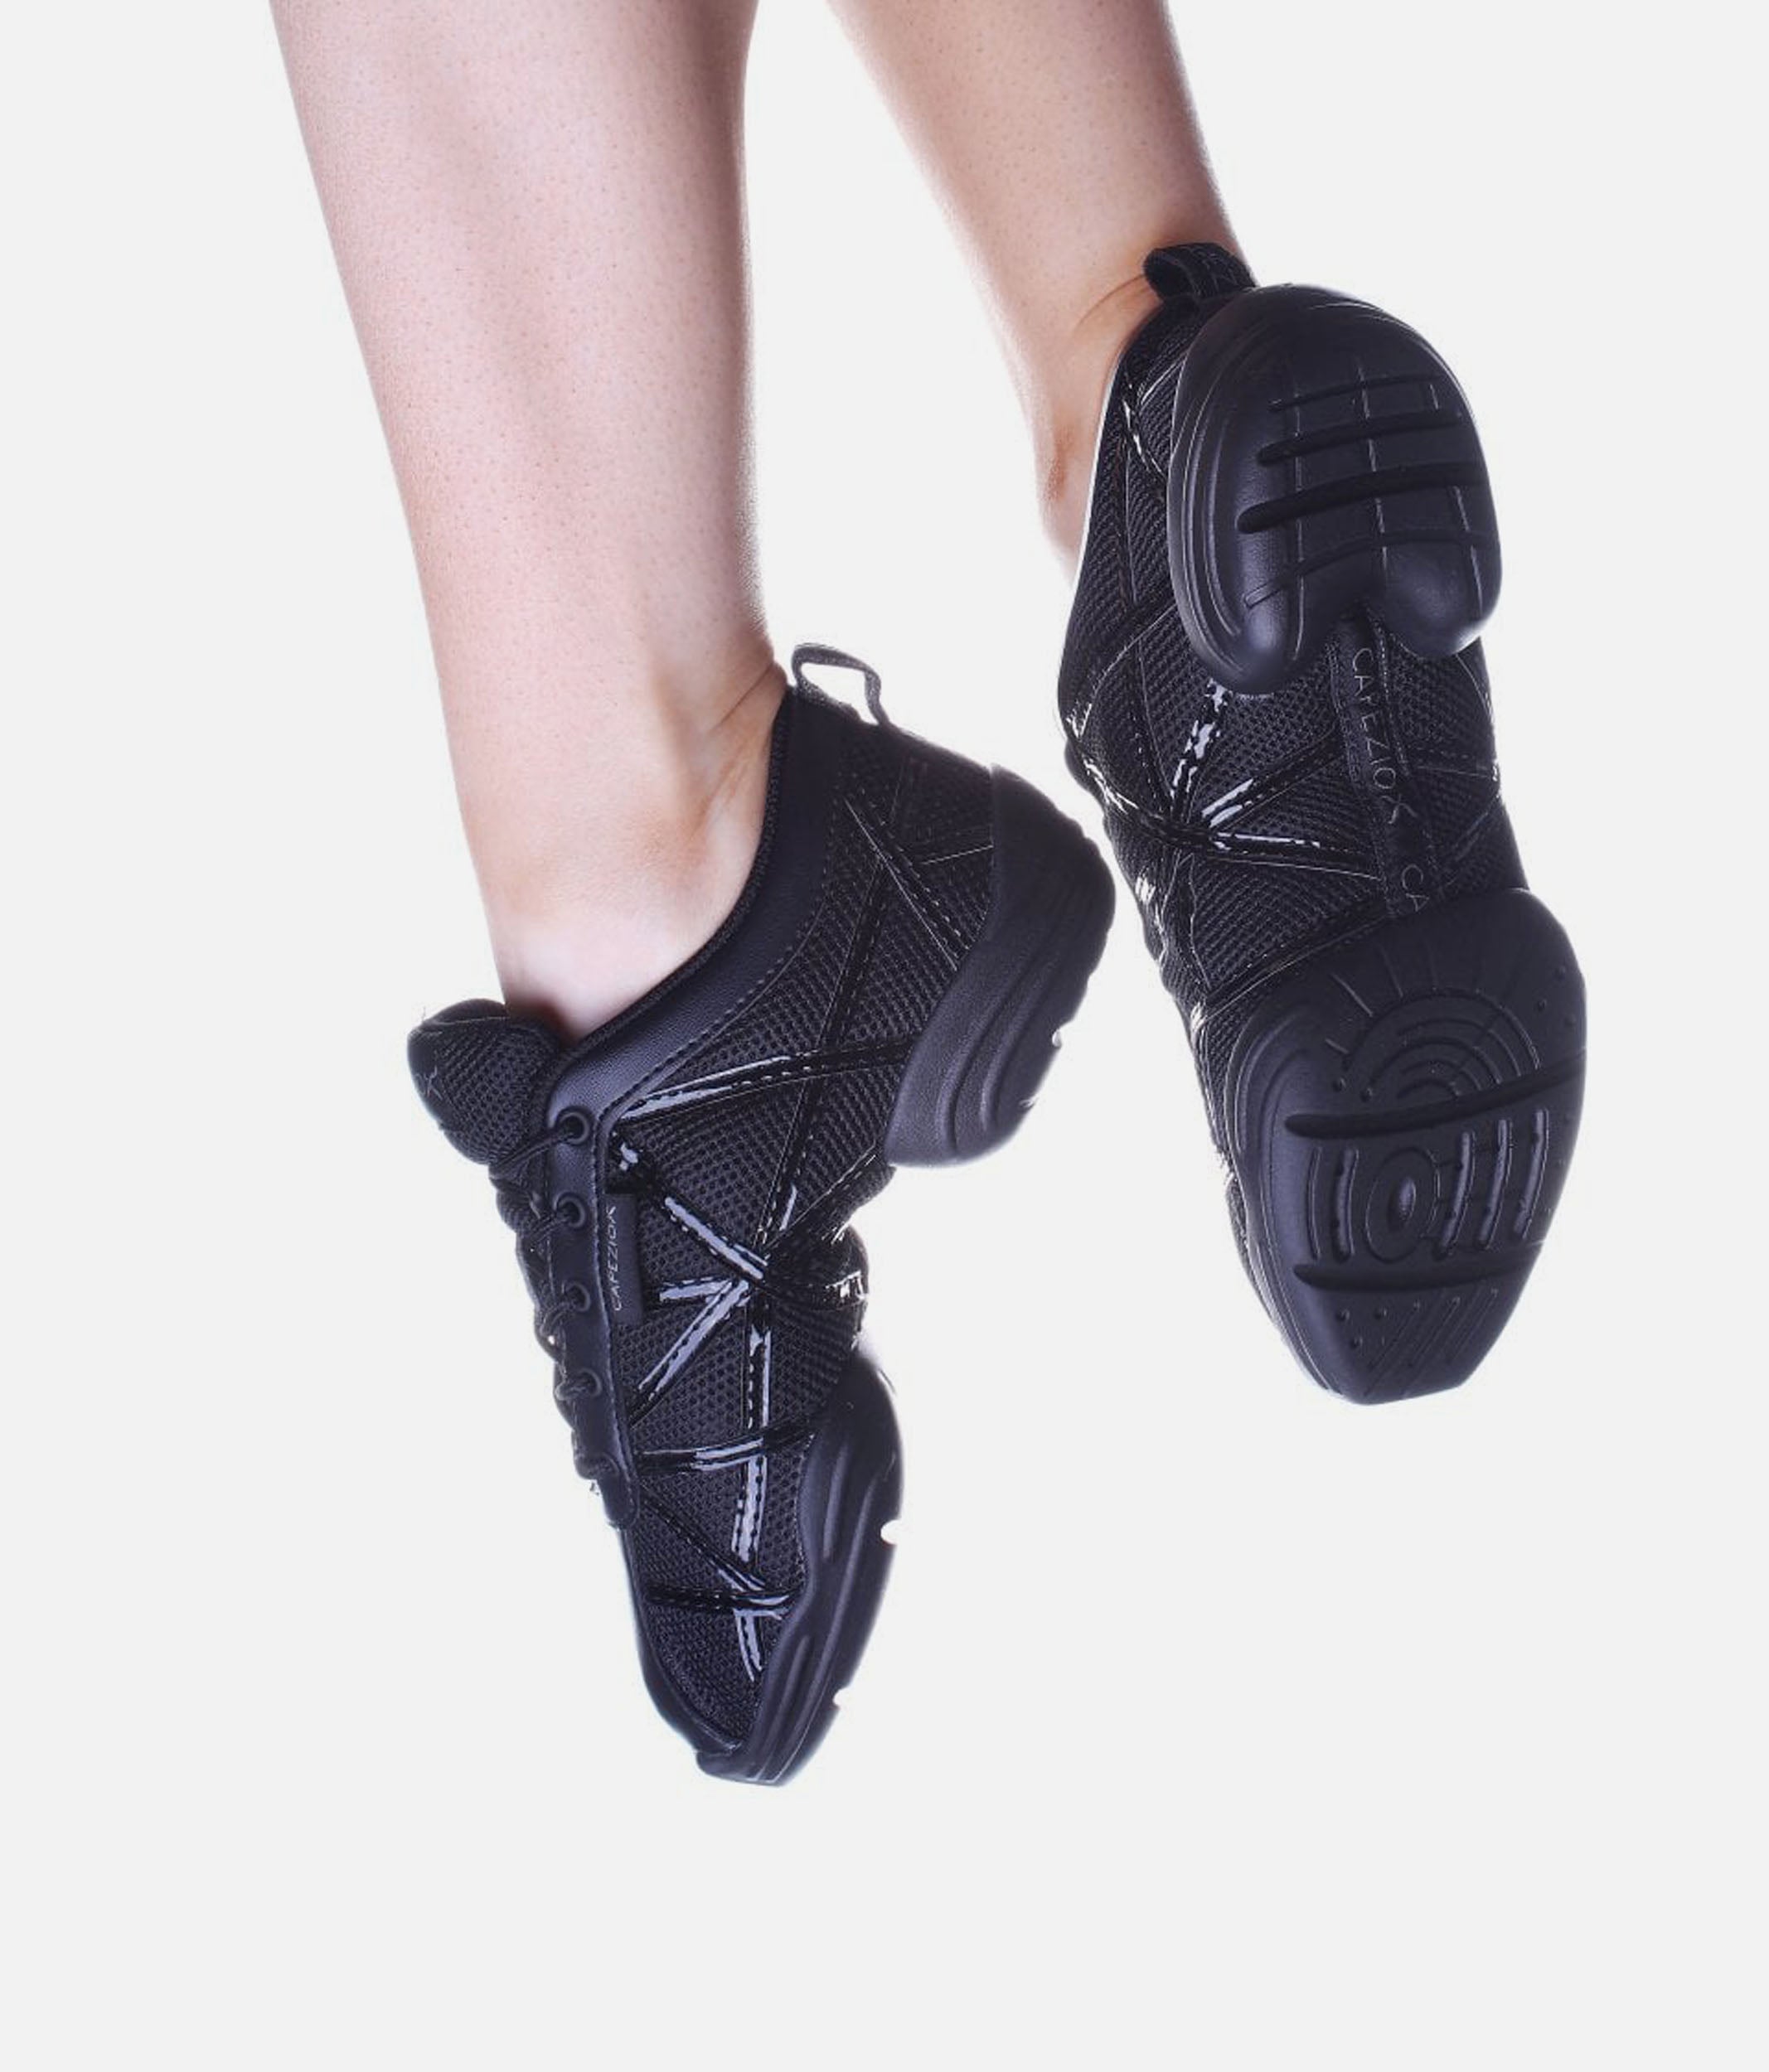 Women's Dance Shoes by Capezio®